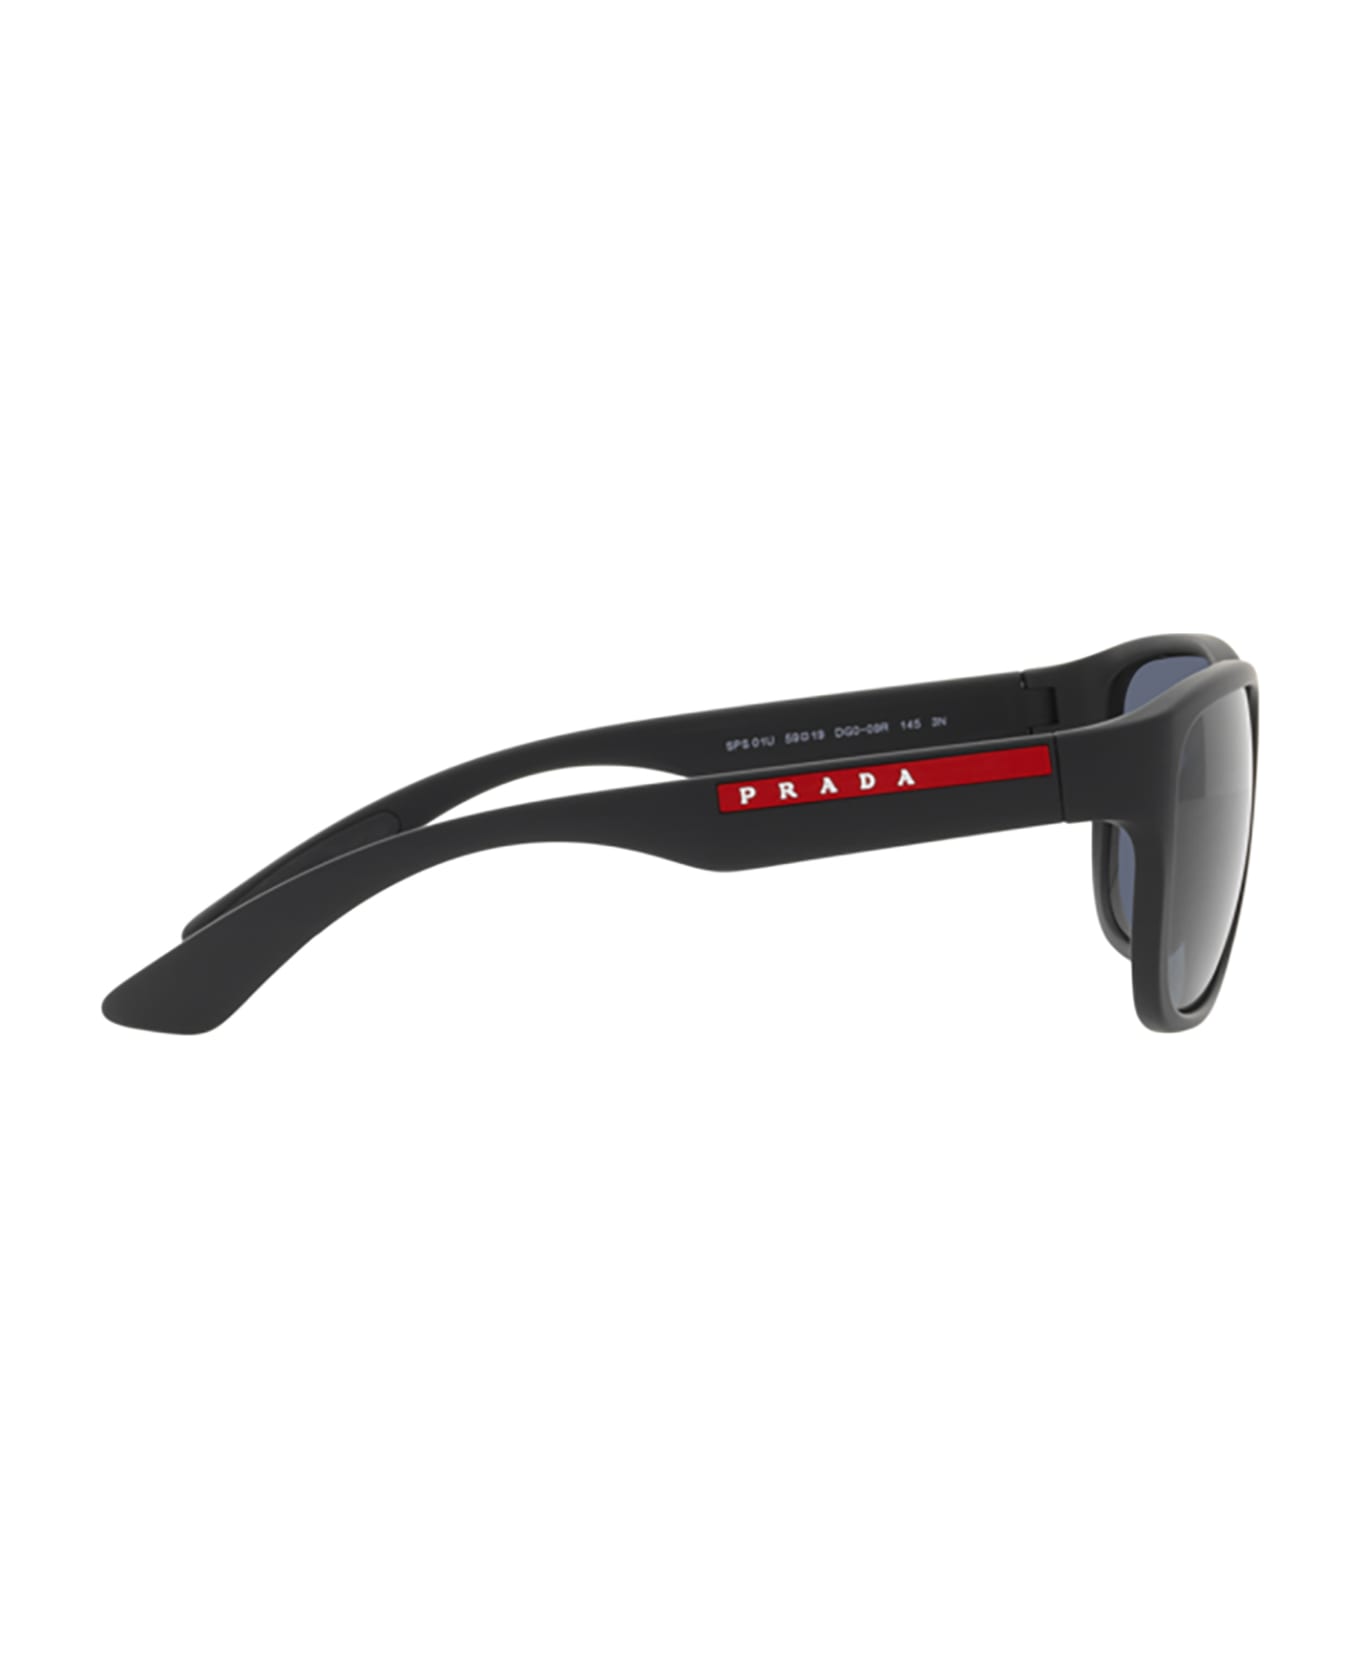 Prada Linea Rossa Ps 01us Rubber Black Sunglasses - Rubber Black